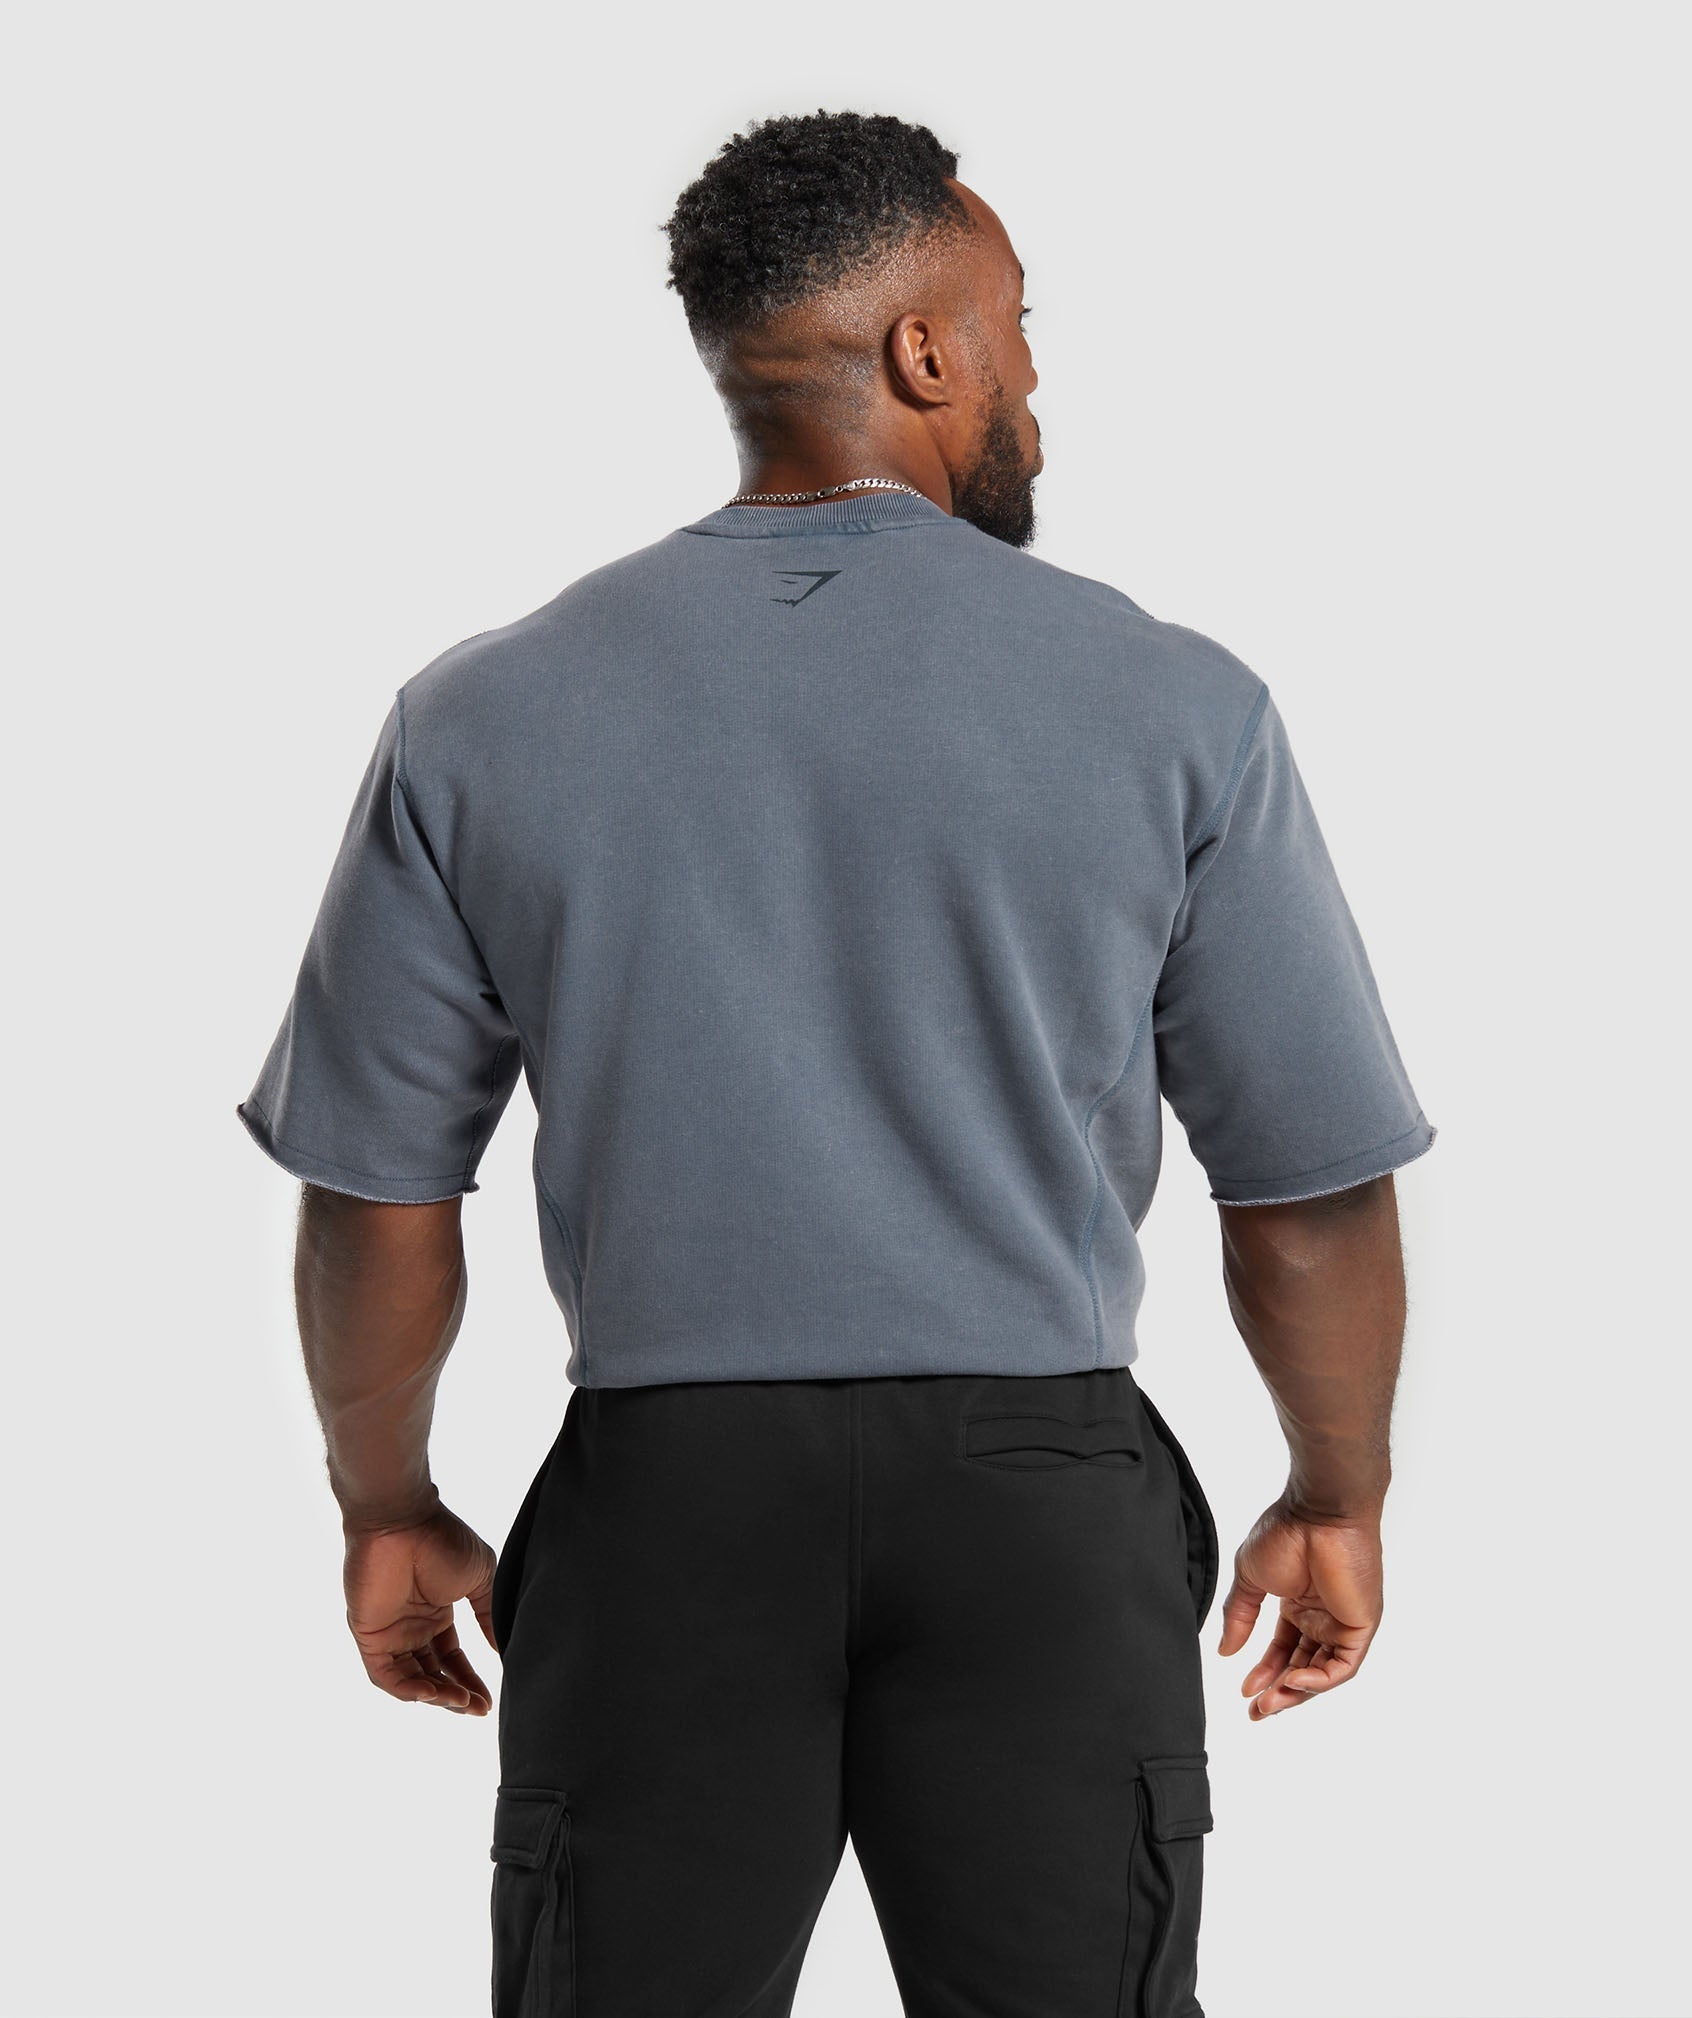 Shop Men's Gym Clothes & Workout Clothes - Gymshark